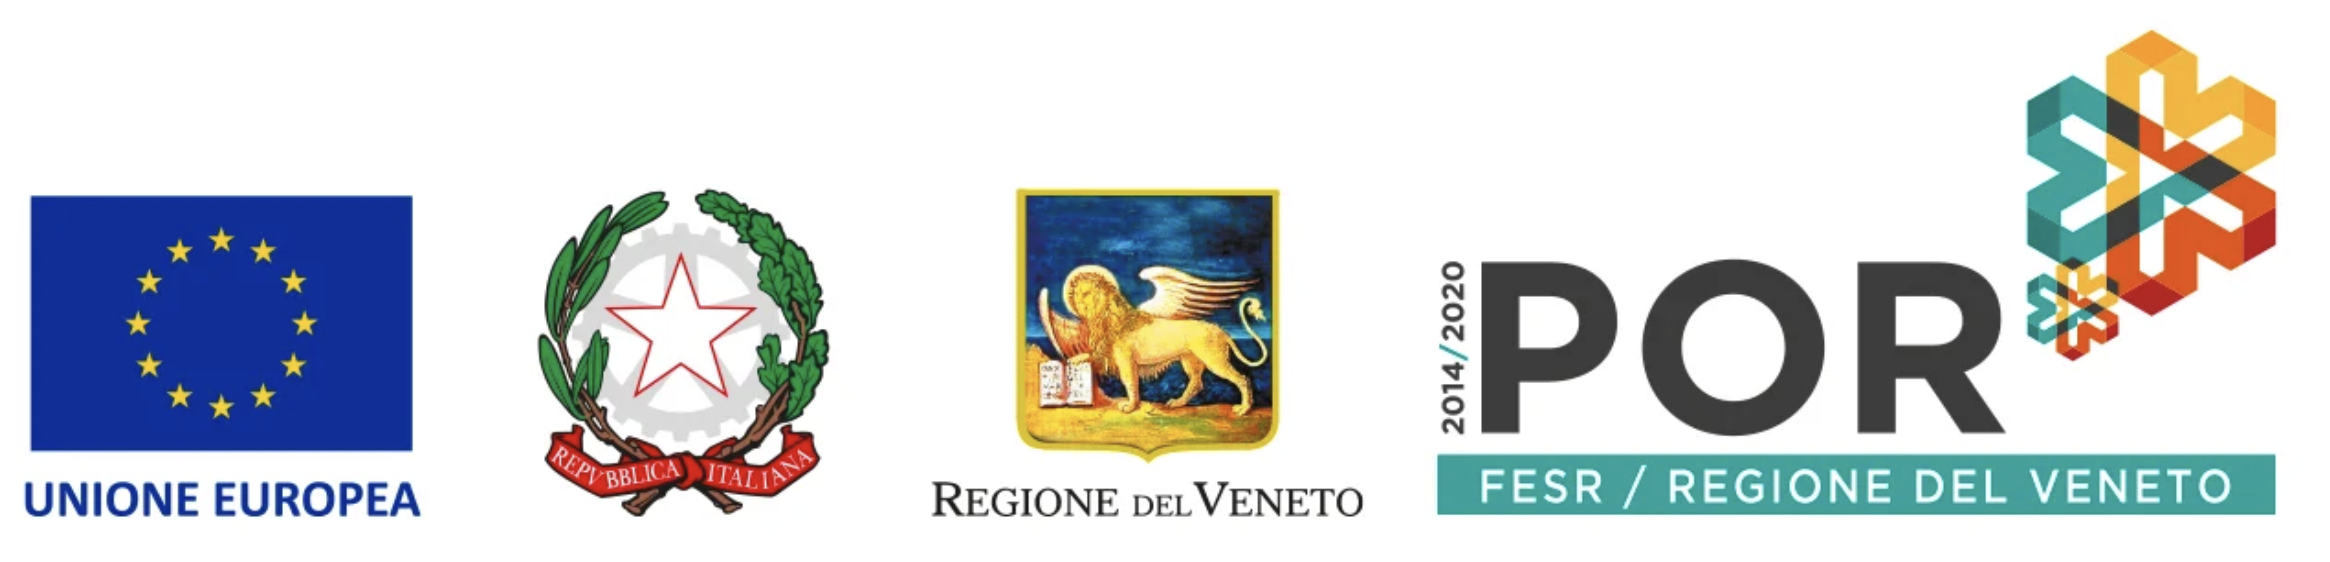 POR FESR 2014-2020 Regione Veneto